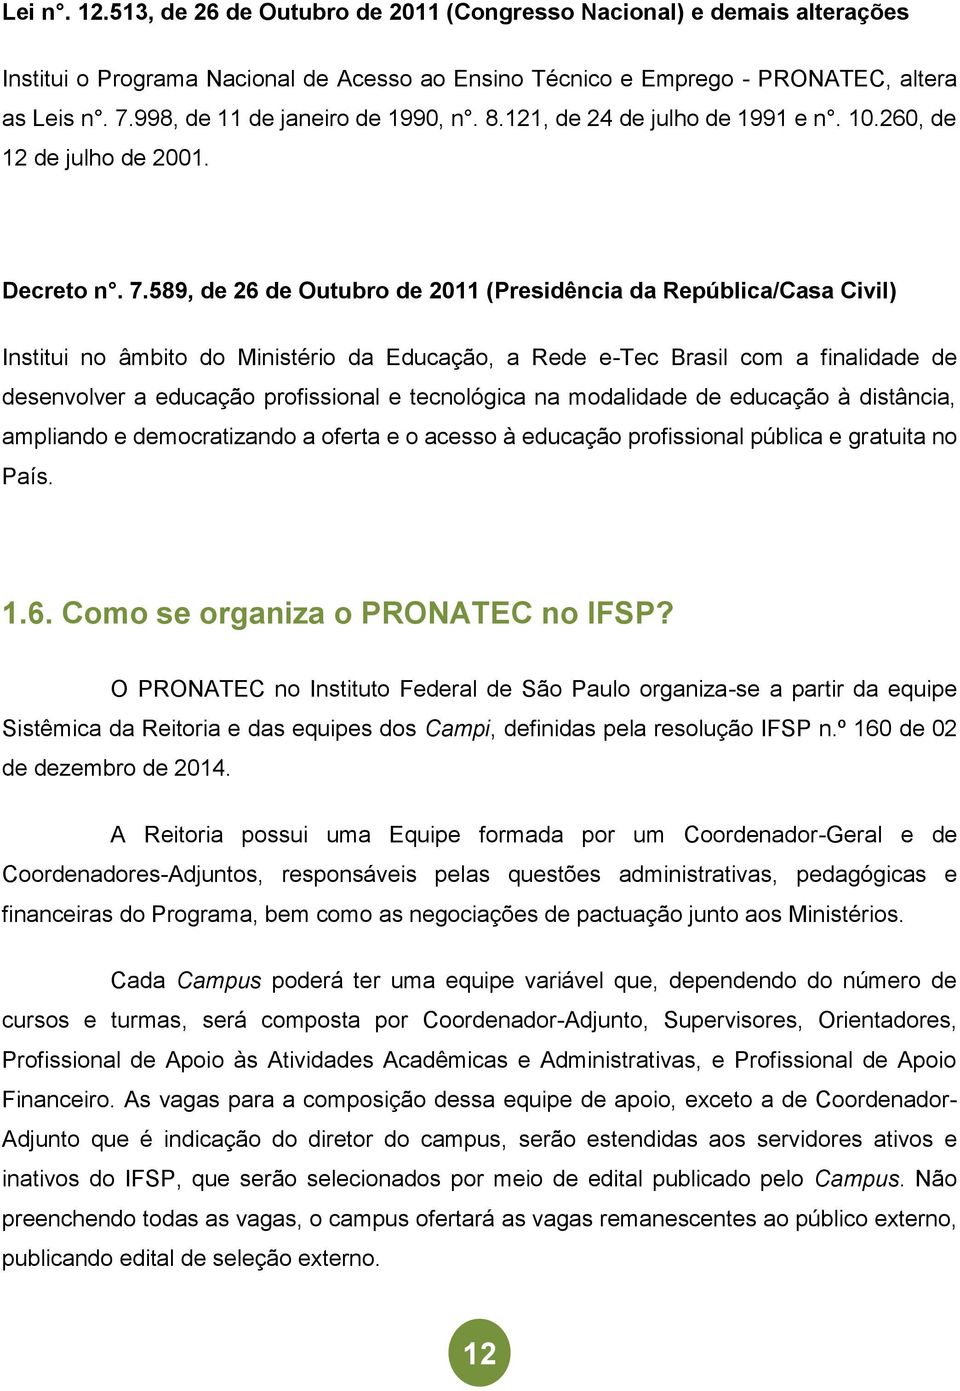 589, de 26 de Outubro de 2011 (Presidência da República/Casa Civil) Institui no âmbito do Ministério da Educação, a Rede e-tec Brasil com a finalidade de desenvolver a educação profissional e